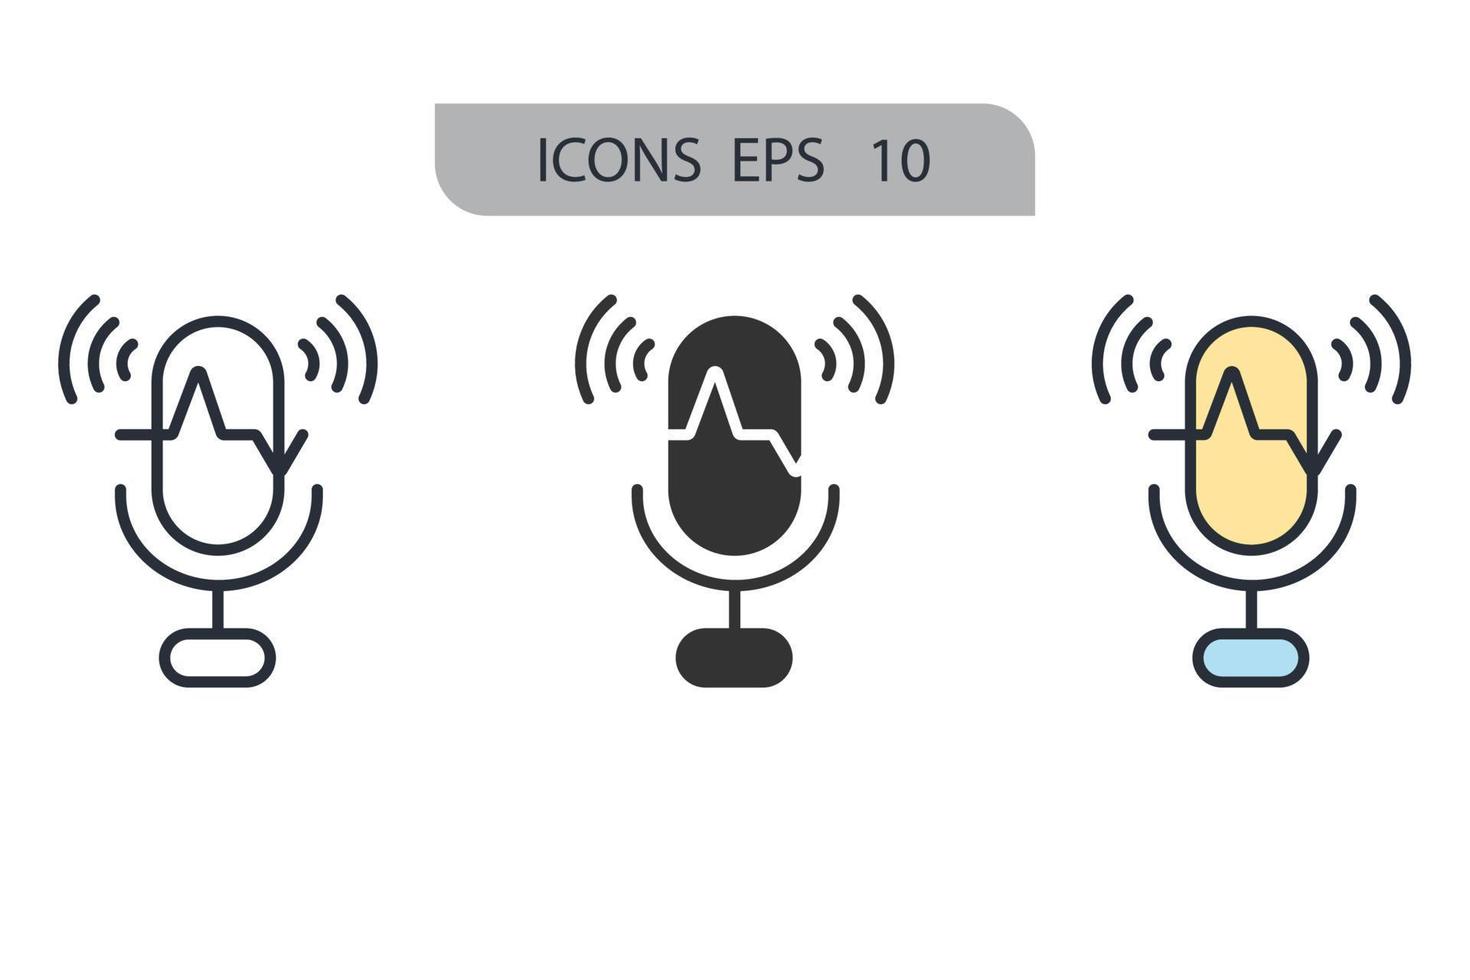 icônes de reconnaissance vocale symboles éléments vectoriels pour le web infographique vecteur